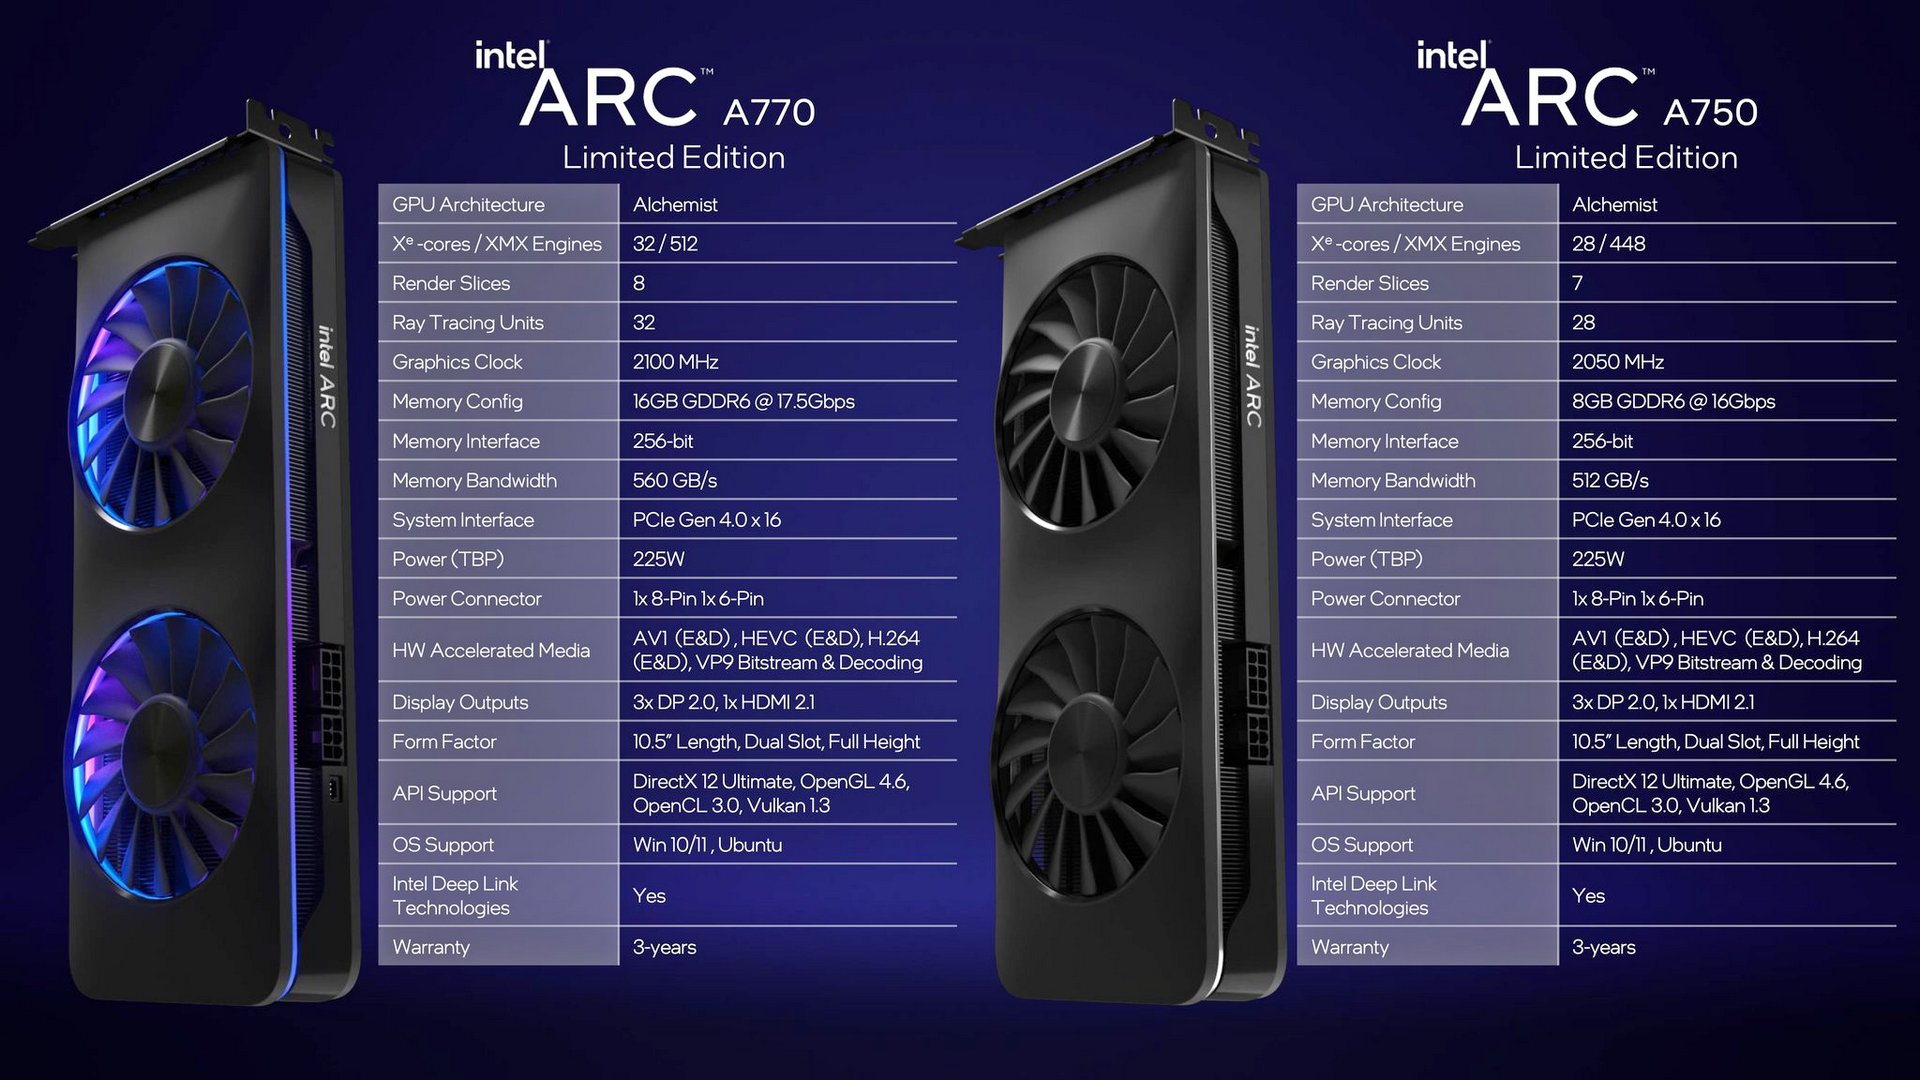 Intel ARC A750 A770 specs